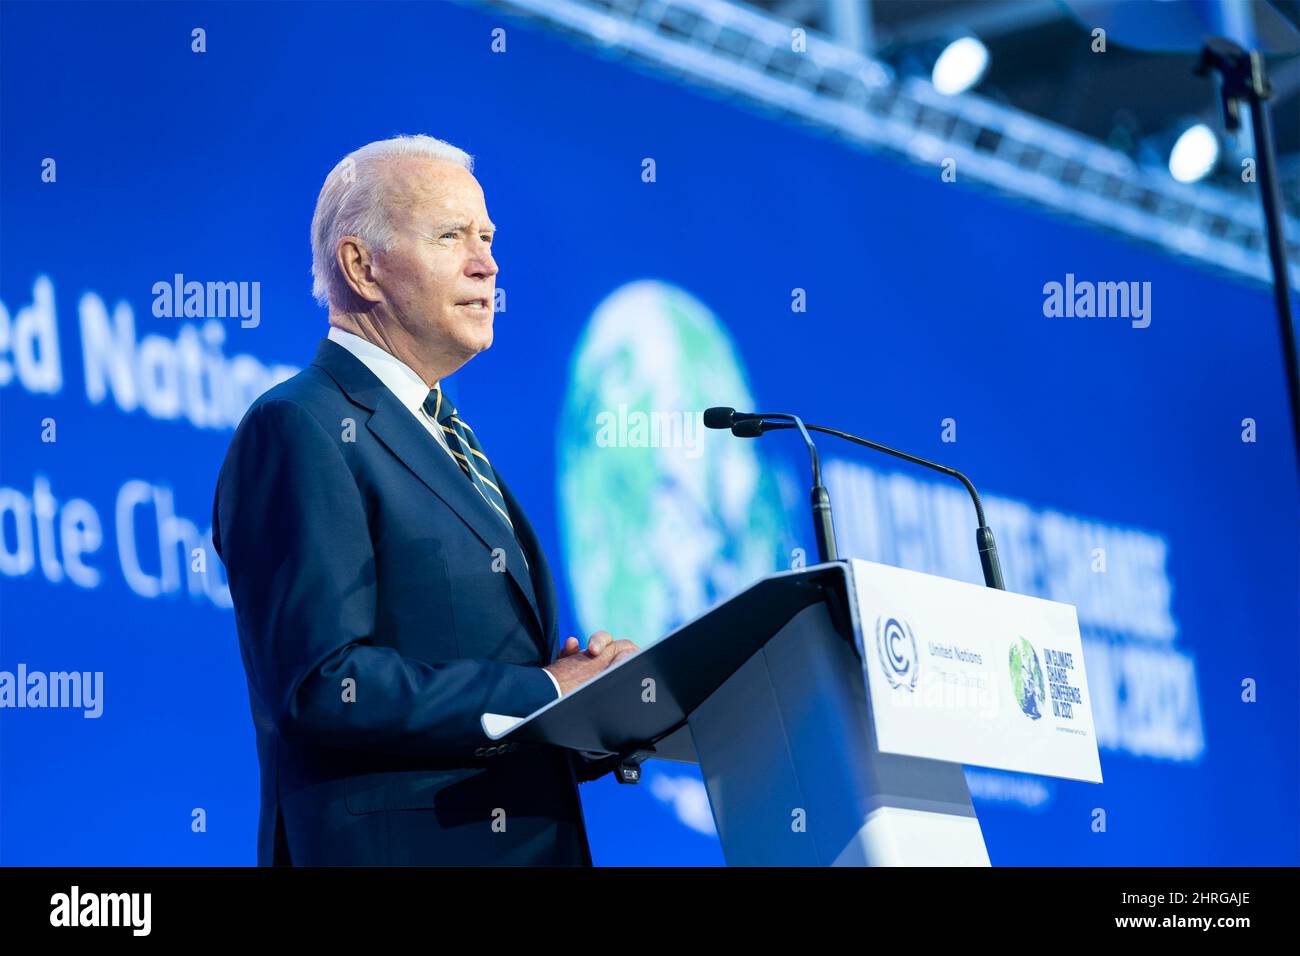 Joe Biden, président des États-Unis, prononce une allocution à la séance d'ouverture de la Conférence des Nations Unies sur les changements climatiques COP26 avec les dirigeants du monde entier au campus écossais de l'événement, le 1 novembre 2021 à Glasgow, en Écosse. Banque D'Images